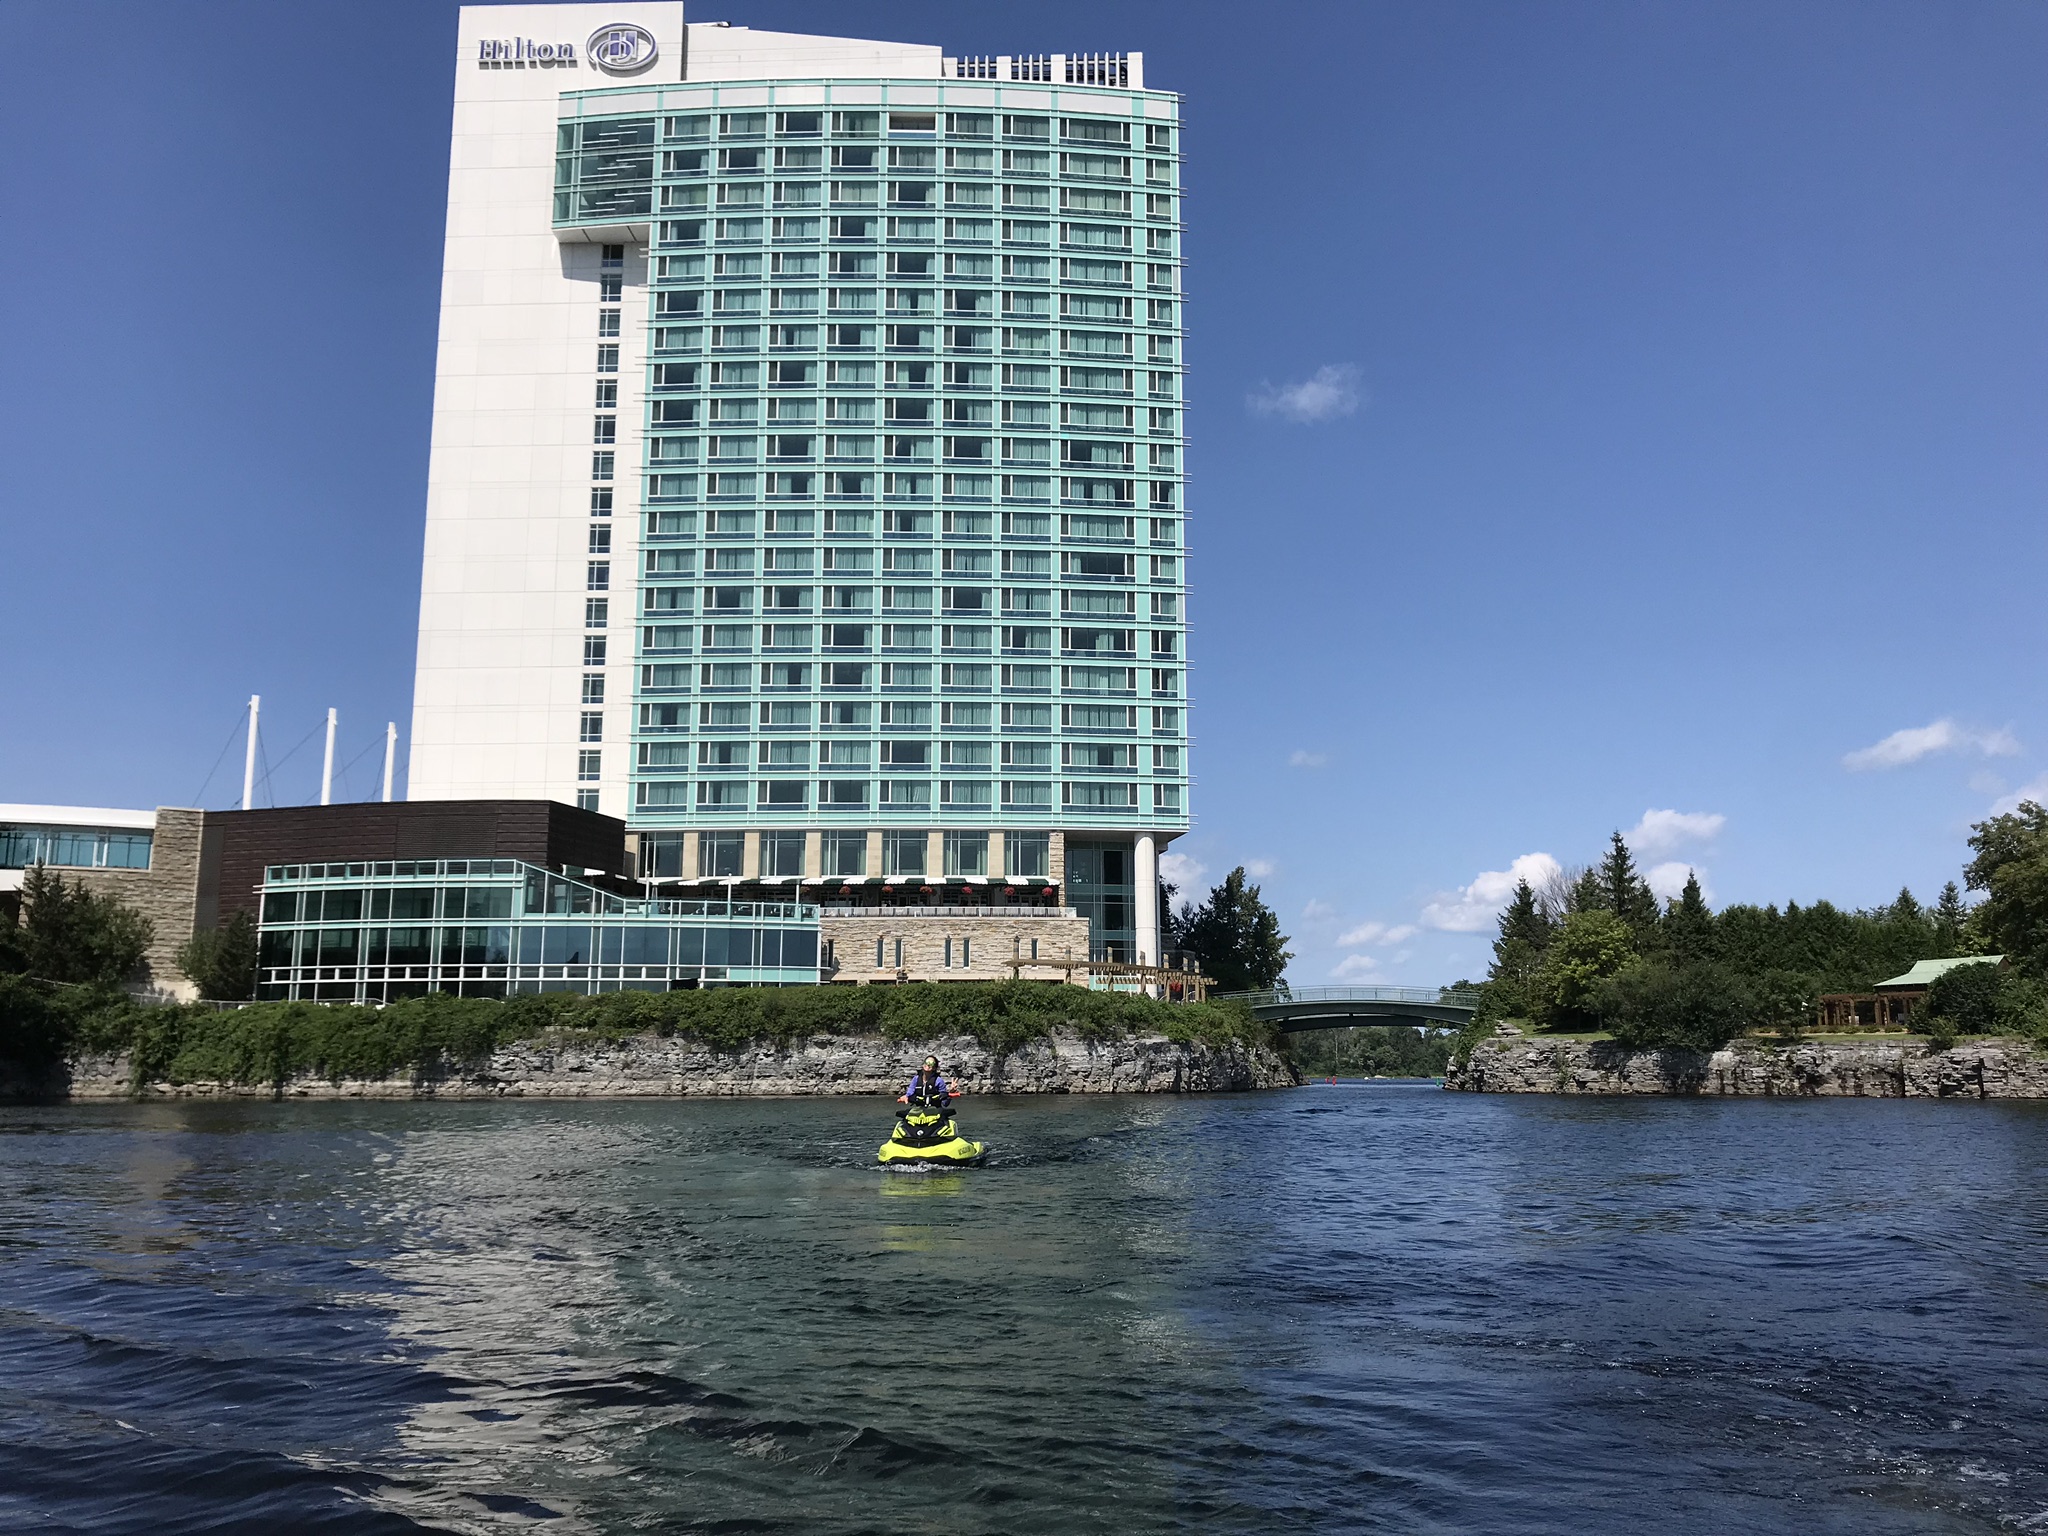 L’hôtel Hilton Lac-Leamy qui attend Bianca pour une nuitée, tout juste aux abords de la rivière des Outaouais